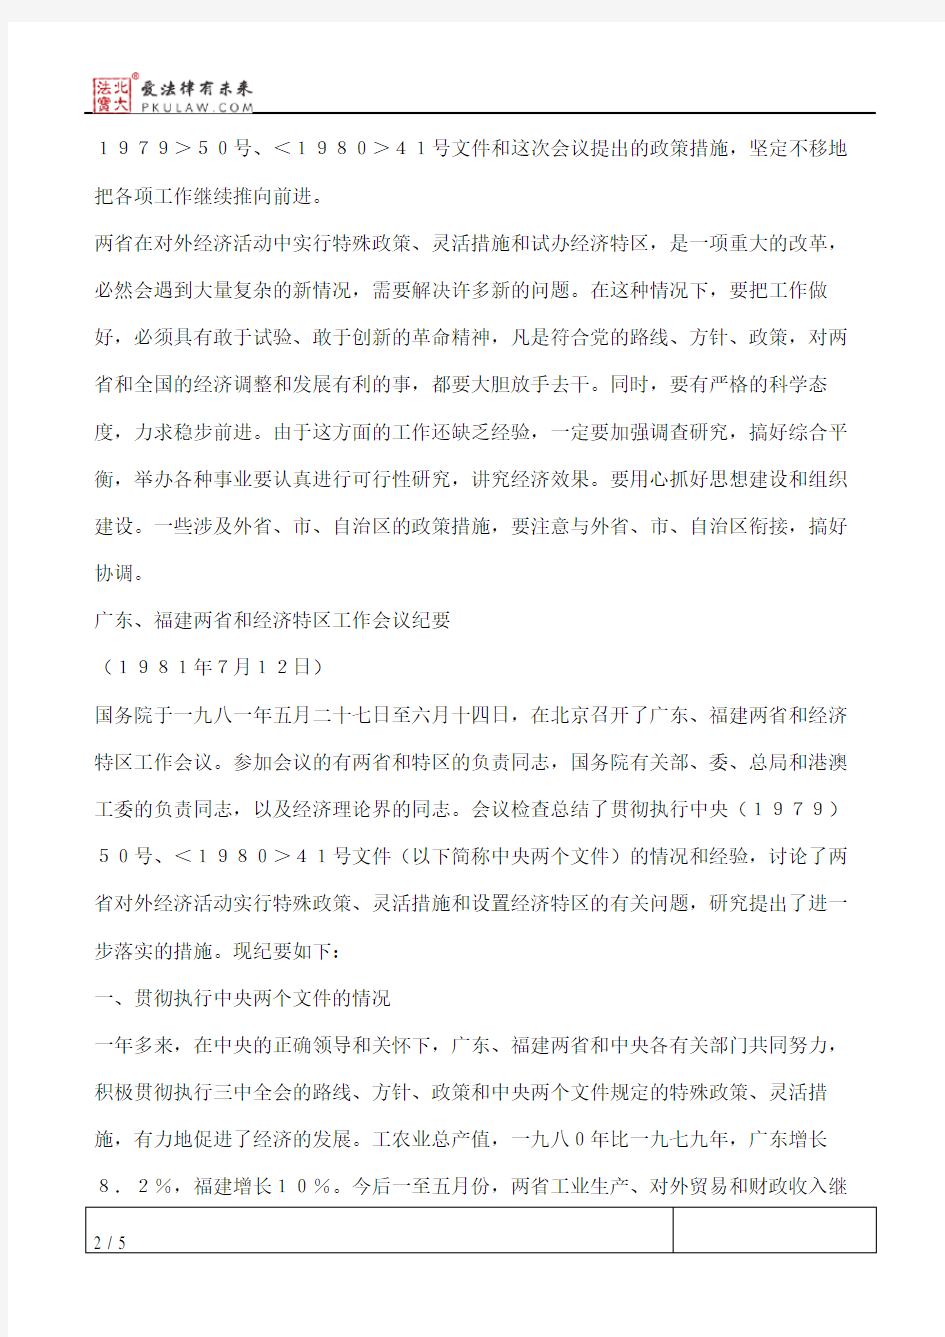 中共中央、国务院批转《广东、福建两省和经济特区工作会议纪要的》通知